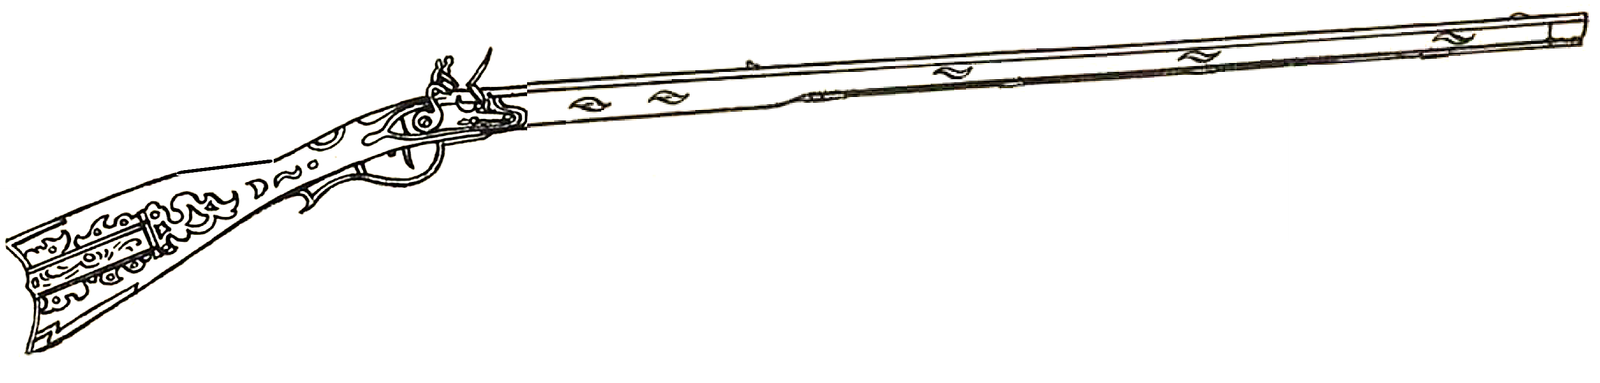 kentucky-long-rifle